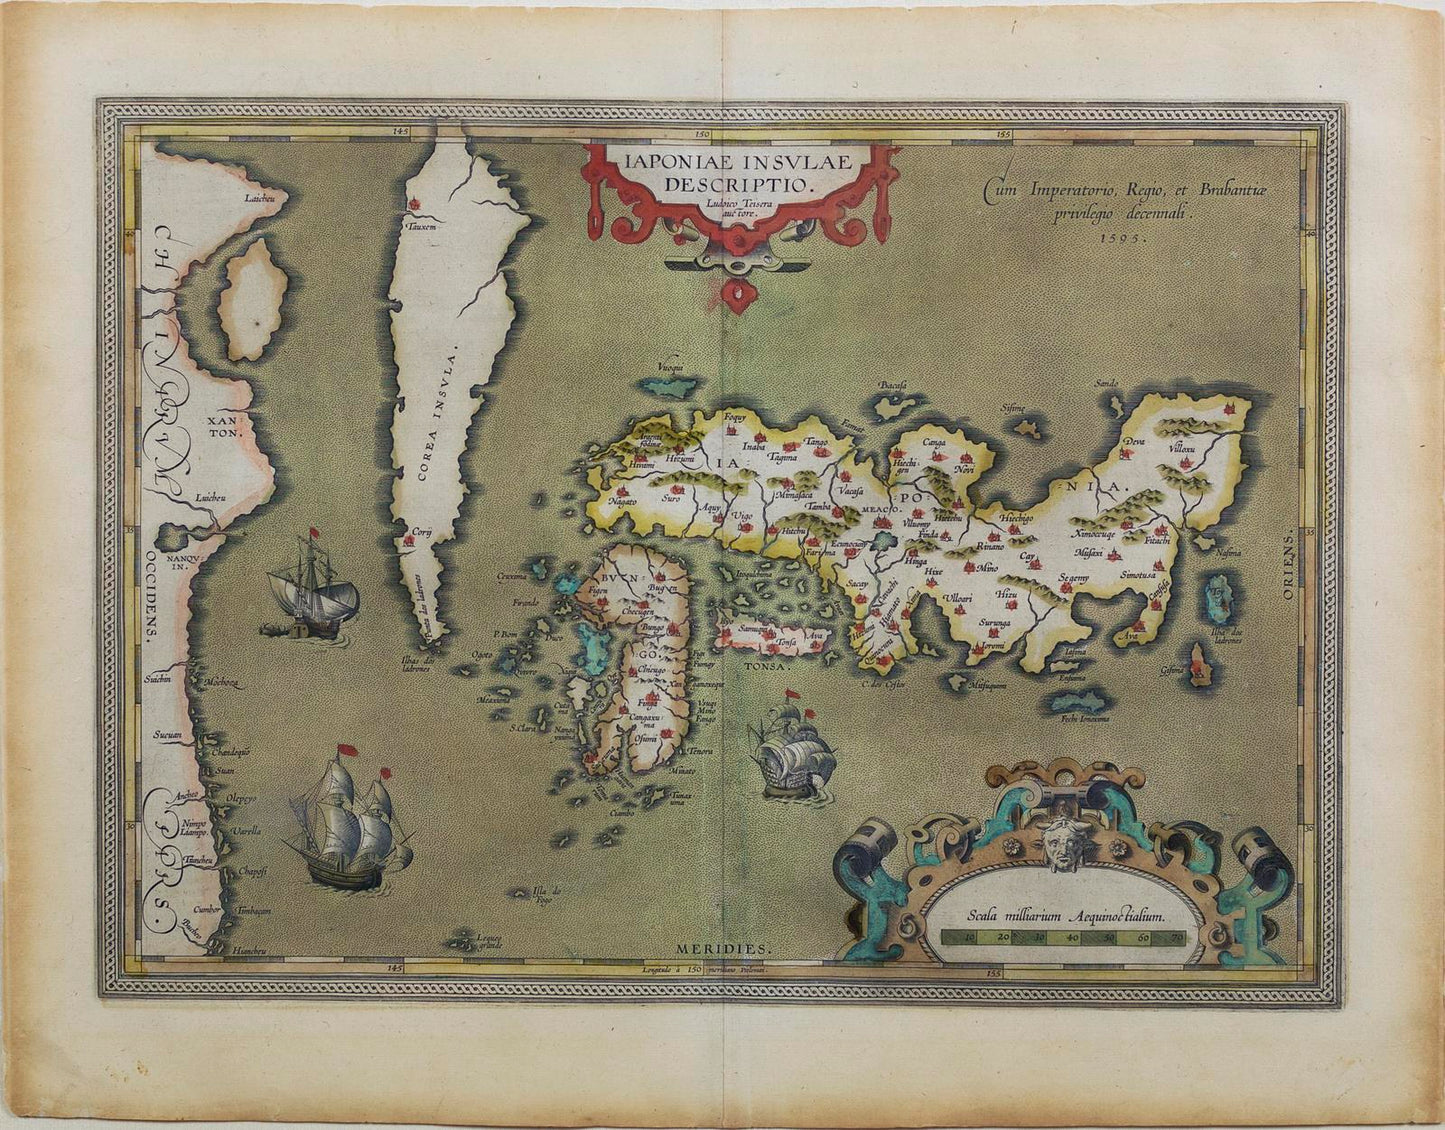 ORTELIUS, Abraham, Japoniae Insulae Descriptio, London: John Norton, 1606 . [Map of Japan].